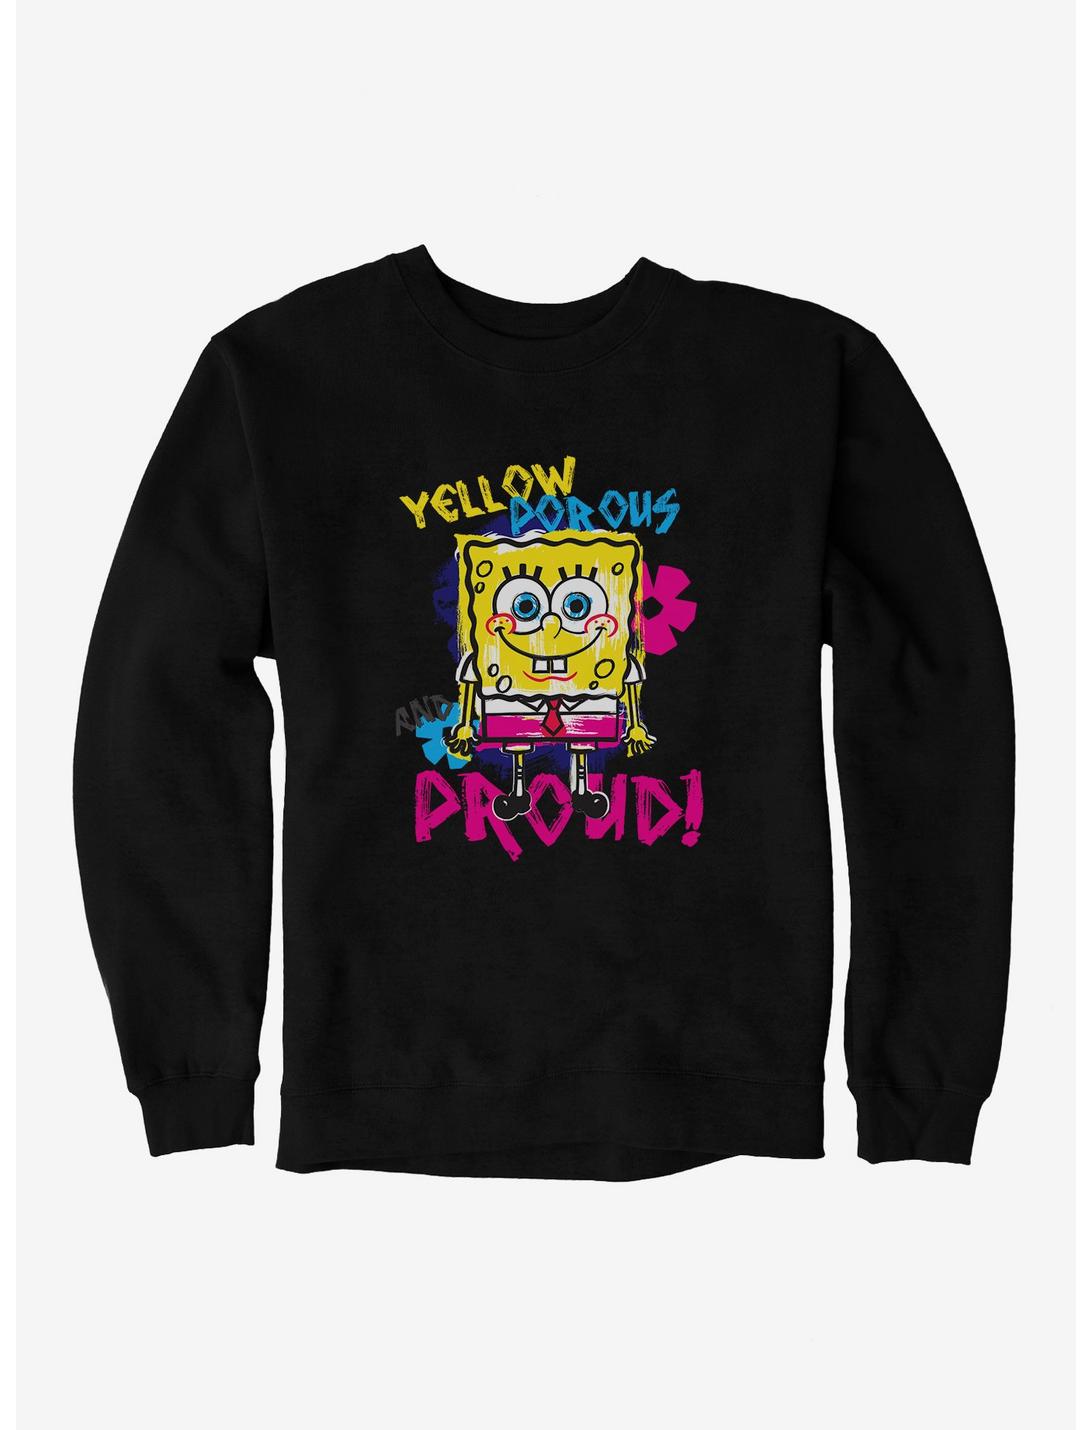 SpongeBob SquarePants Yellow, Porous  And Proud Sweatshirt, BLACK, hi-res